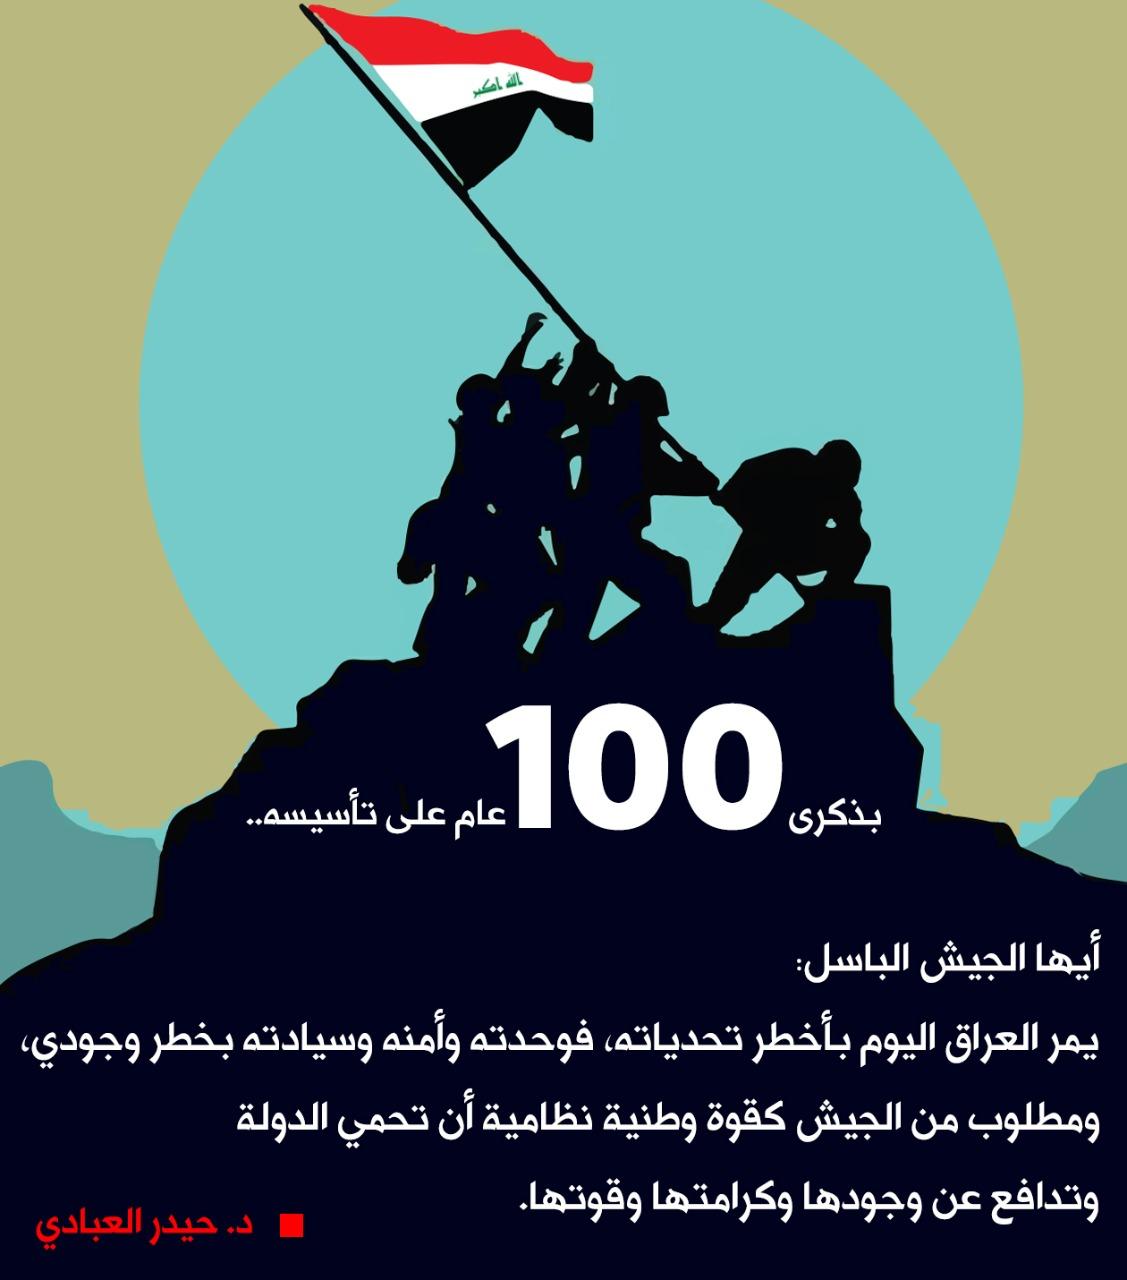 في الذكرى المائة لتأسيس الجيش العراقي الباسل